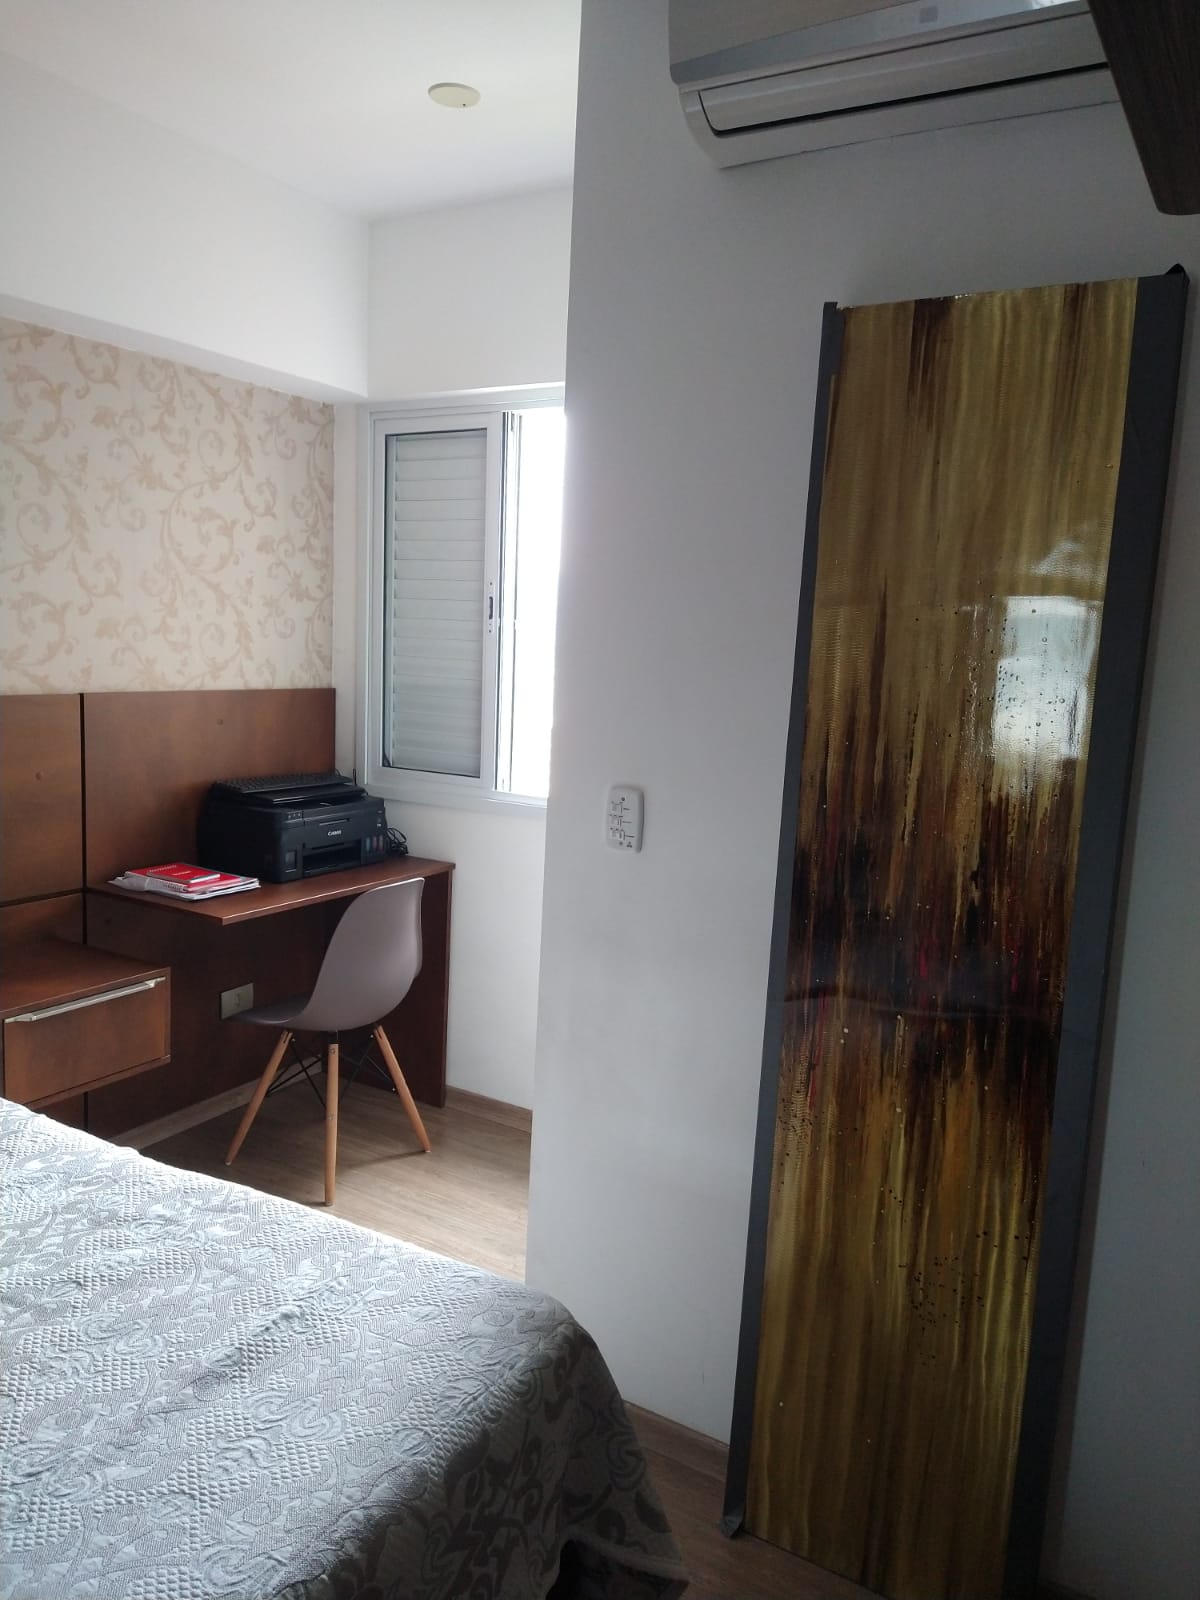 Lindo apartamento com 2 dormitórios 1 suíte próximo ao Bairro do Gonzaga Santos/SP com lazer. - foto 4